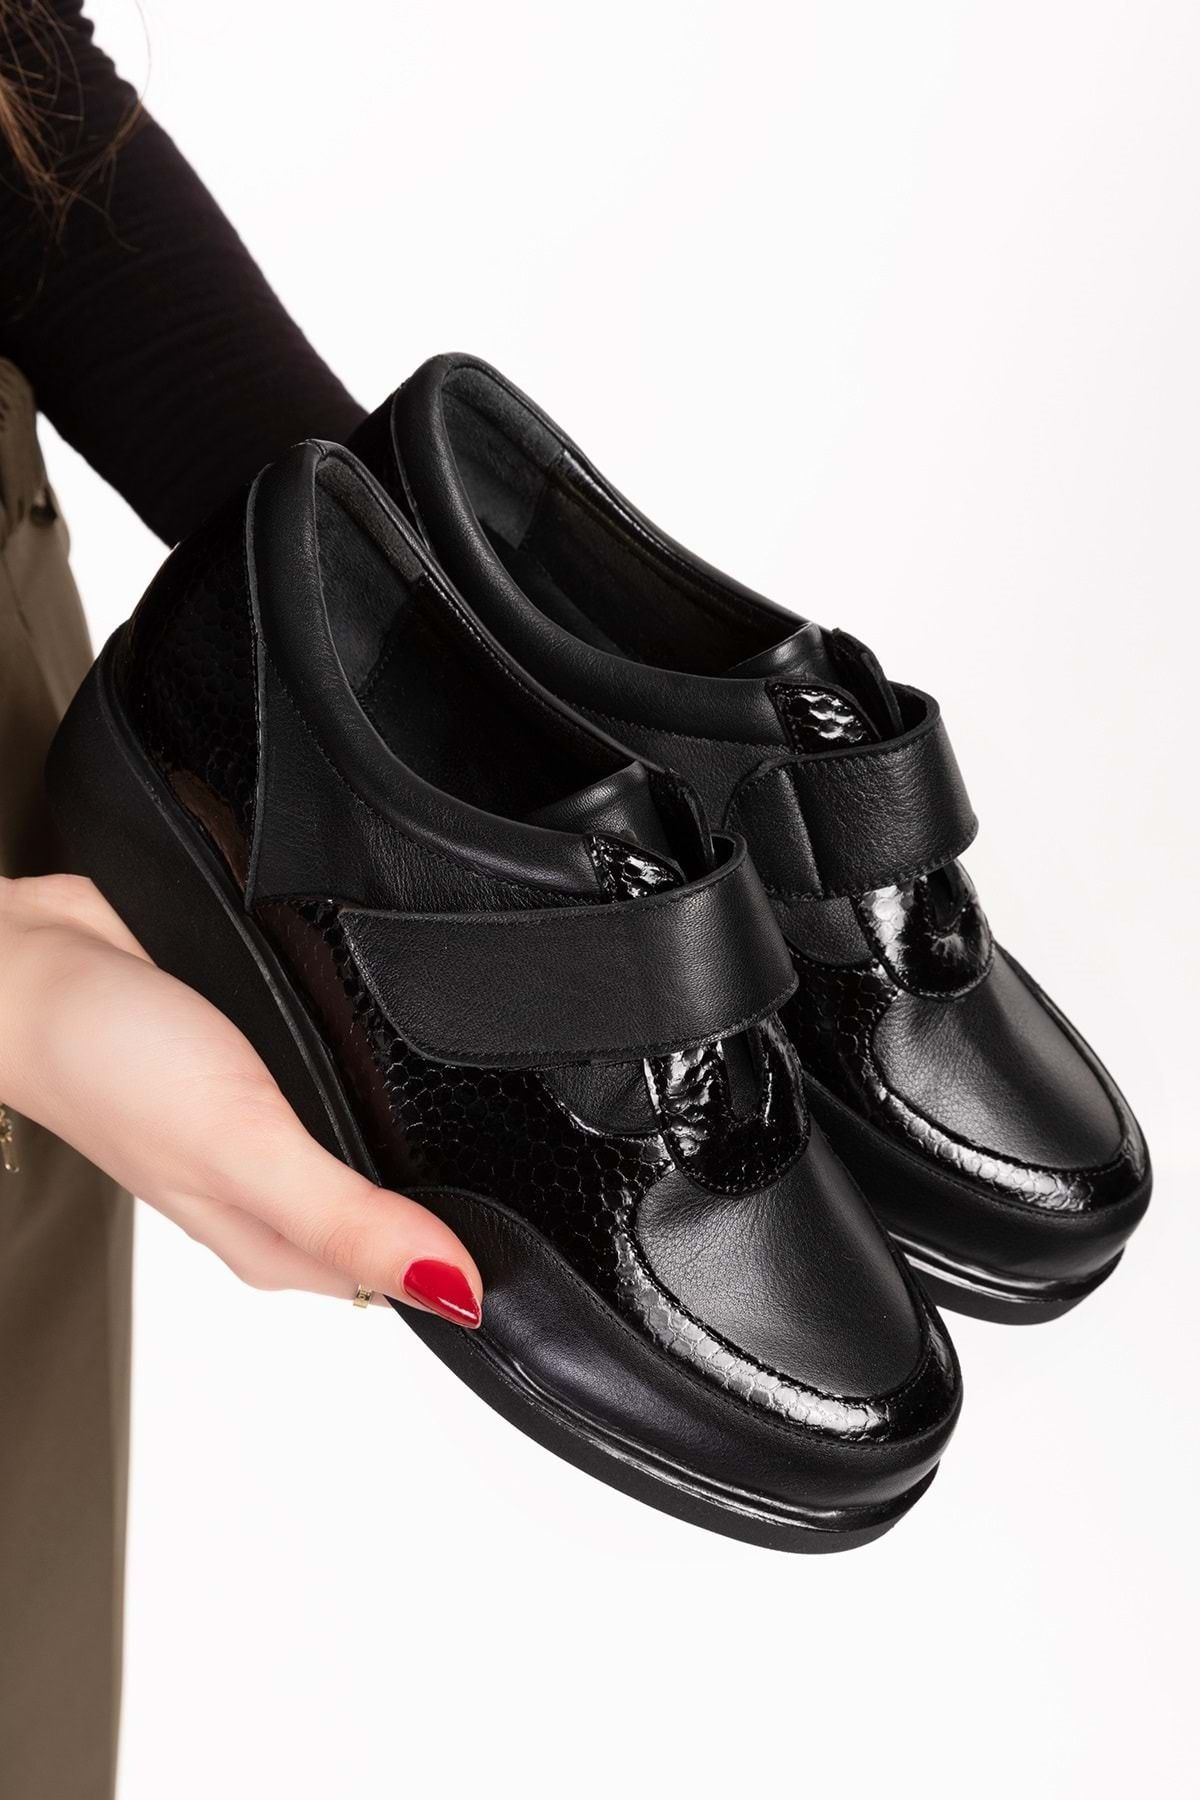 Gondol Hakiki Deri Anatomik Taban Cırtlı Kolay Giyim Ayakkabı tre.845 - Siyah - 38